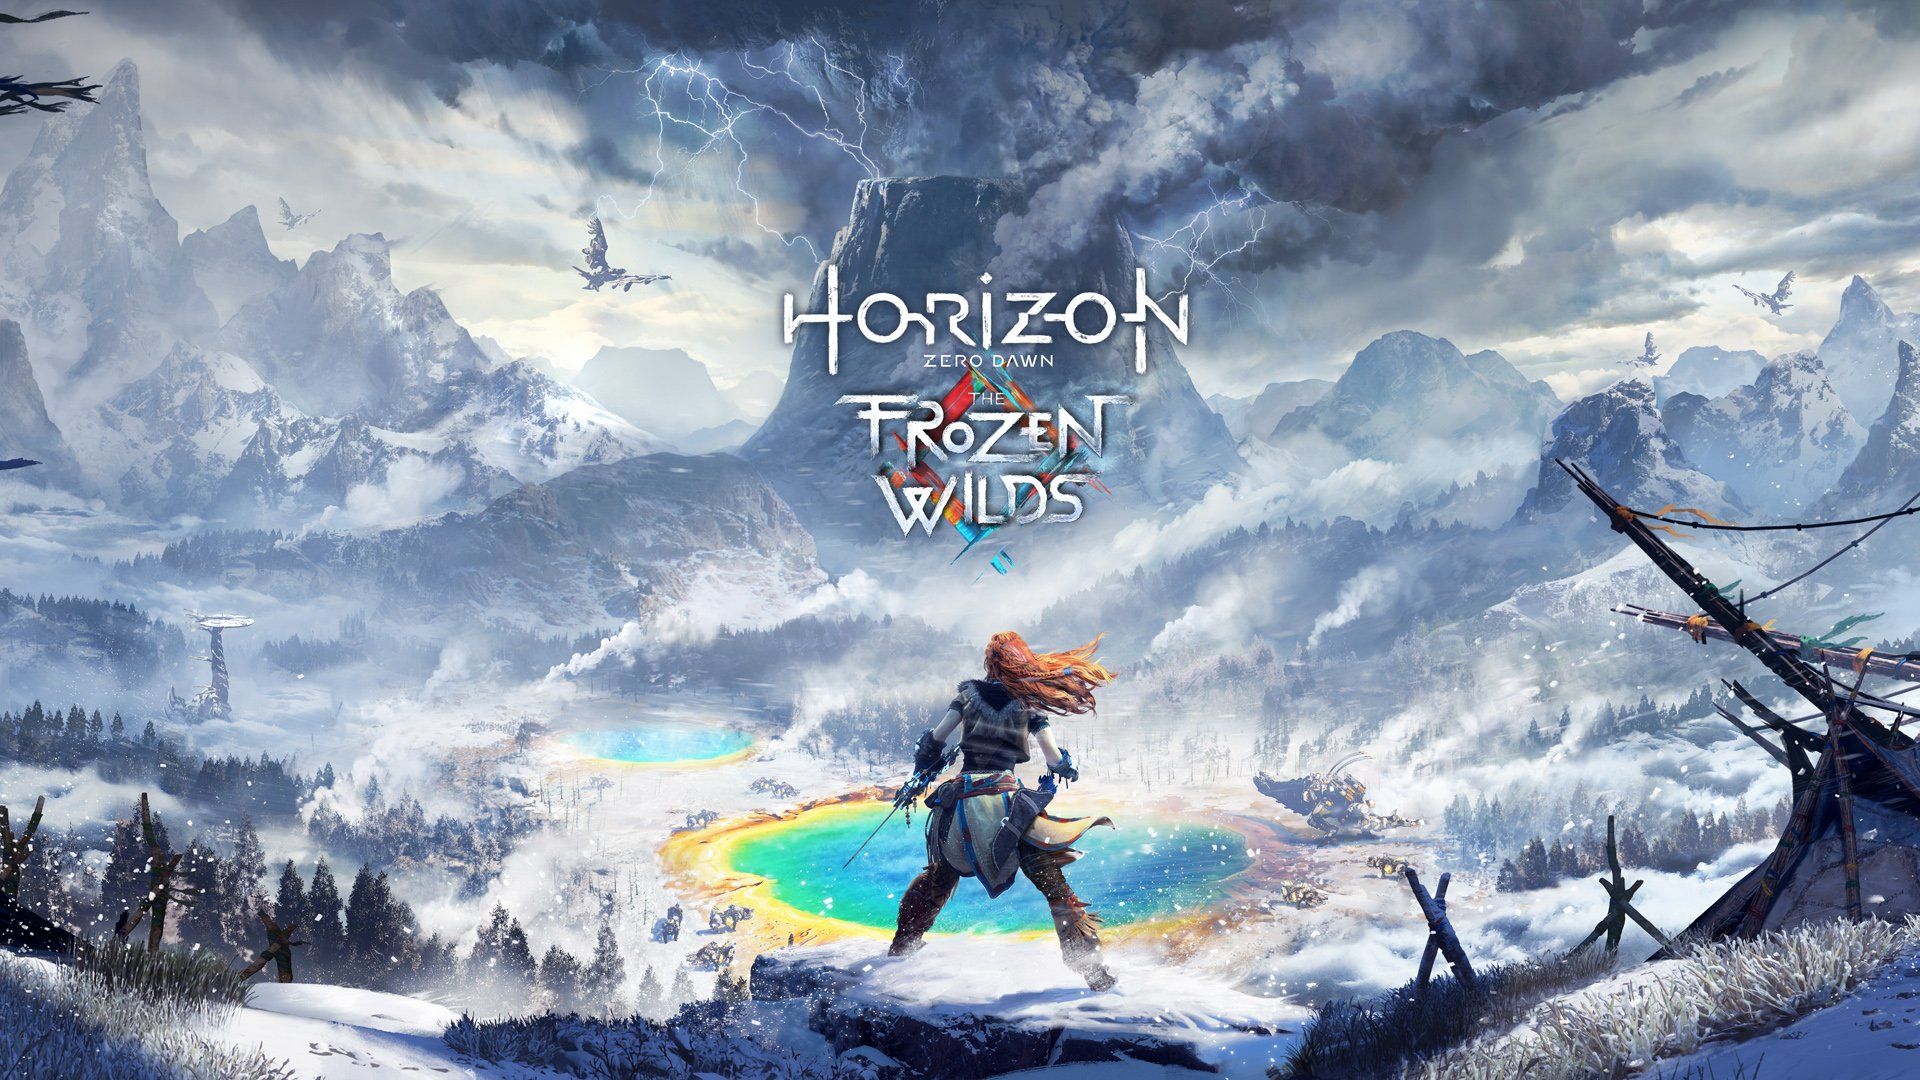 Horizon Zero Dawn The Frozen Wilds Gets Some Beautiful 4K Screenshots